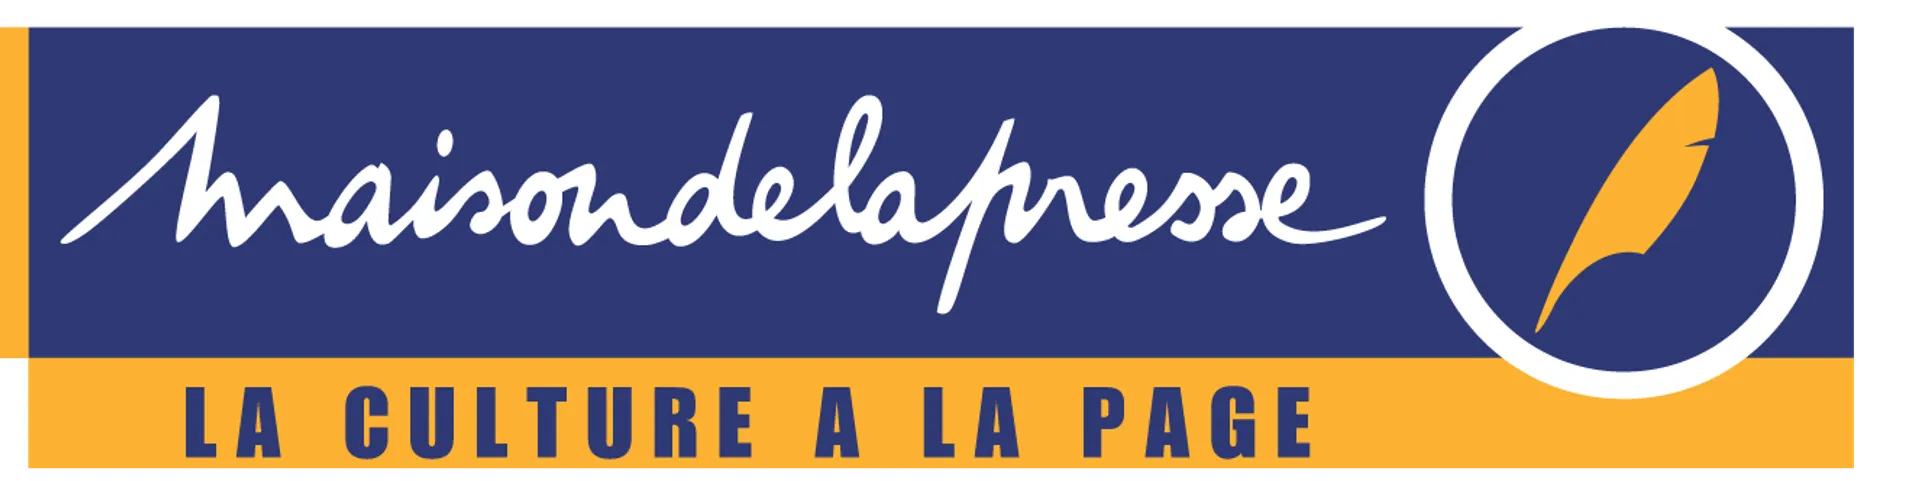 MAISON DE LA PRESSE logo du catalogue